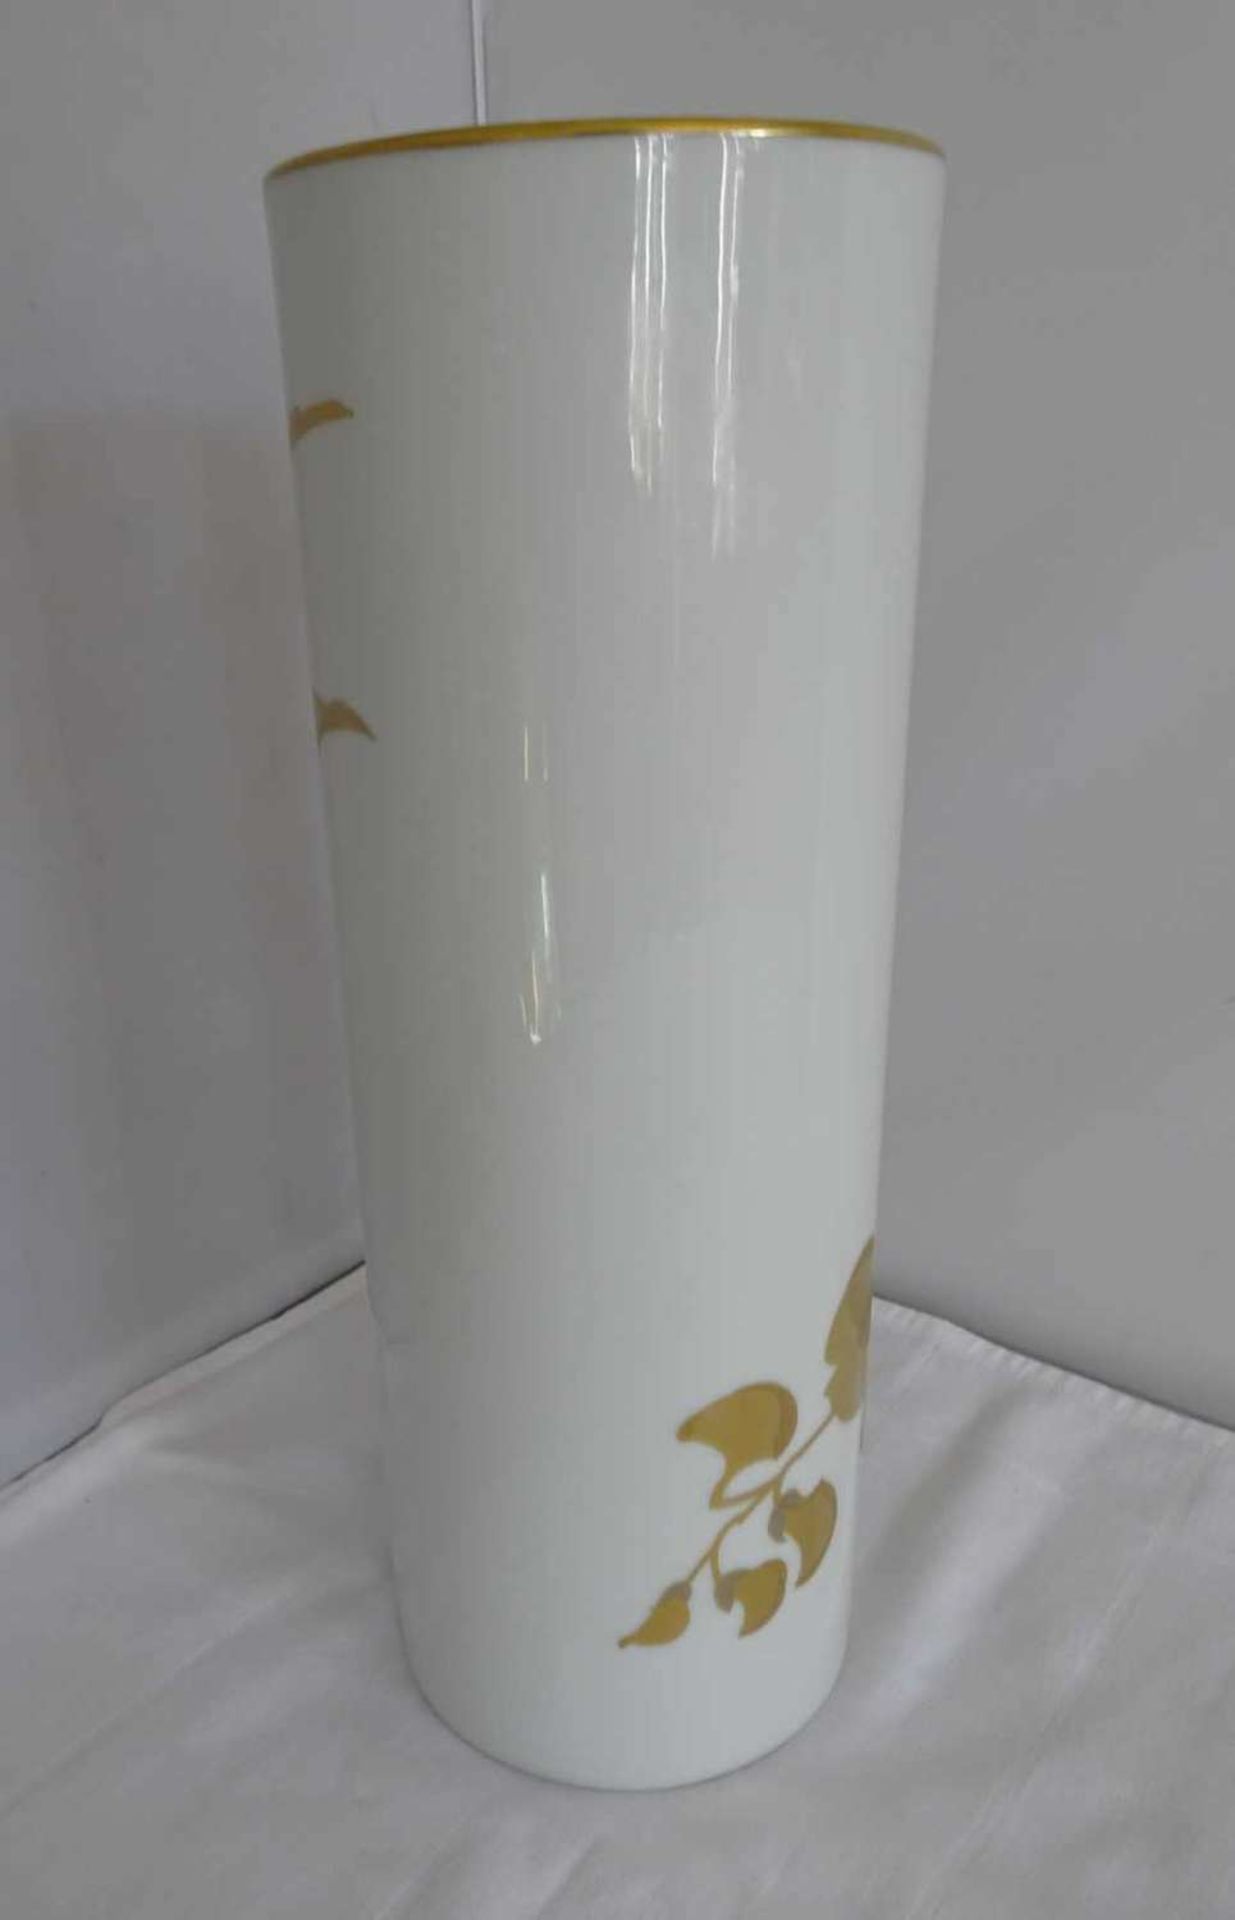 Hutschenreuther Vase - 25 Jahre Tchibo 1974 - Leonhard Paris, Decor Montebello. Höhe ca. 32,6 cm - Image 2 of 3